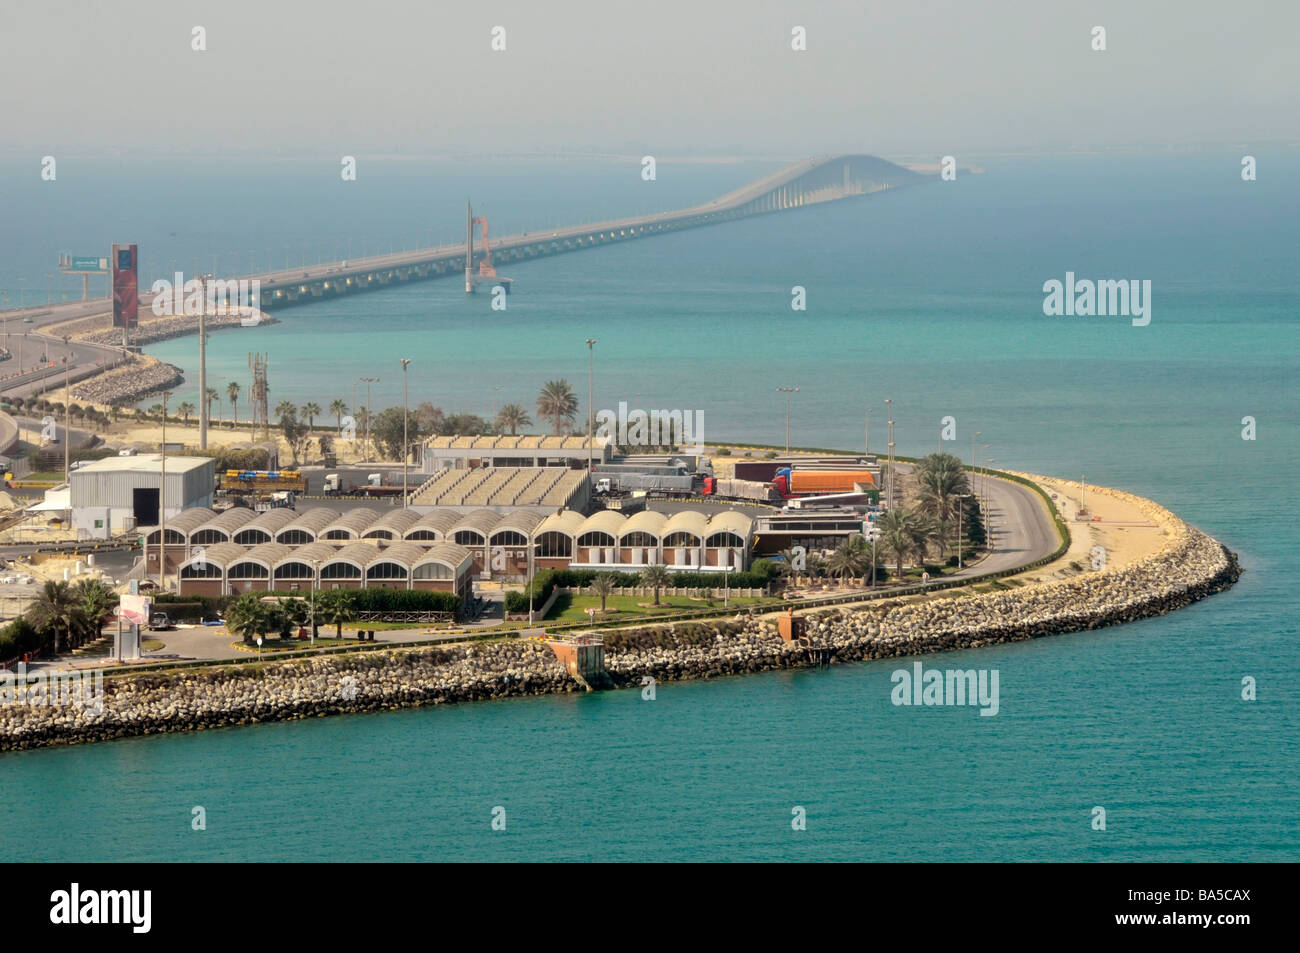 Le roi Fahd Causeway reliant Bahreïn et l'Arabie saoudite vue du golfe Persique vers l'Arabie saoudite de env 'mid point' services area Banque D'Images